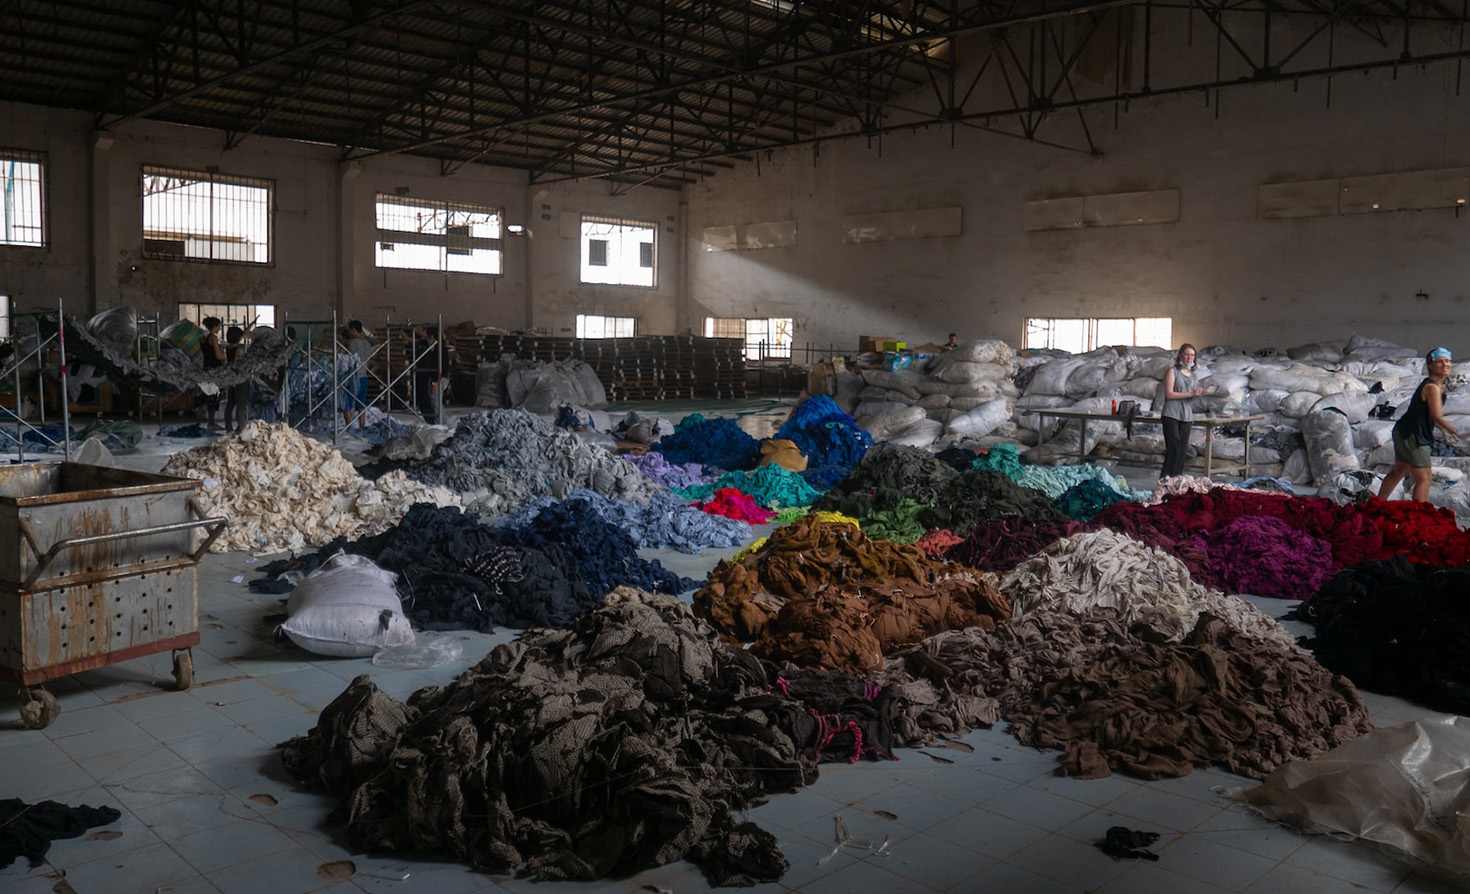 فرز مئات الأطنان من الملابس في مصنع مهجور.